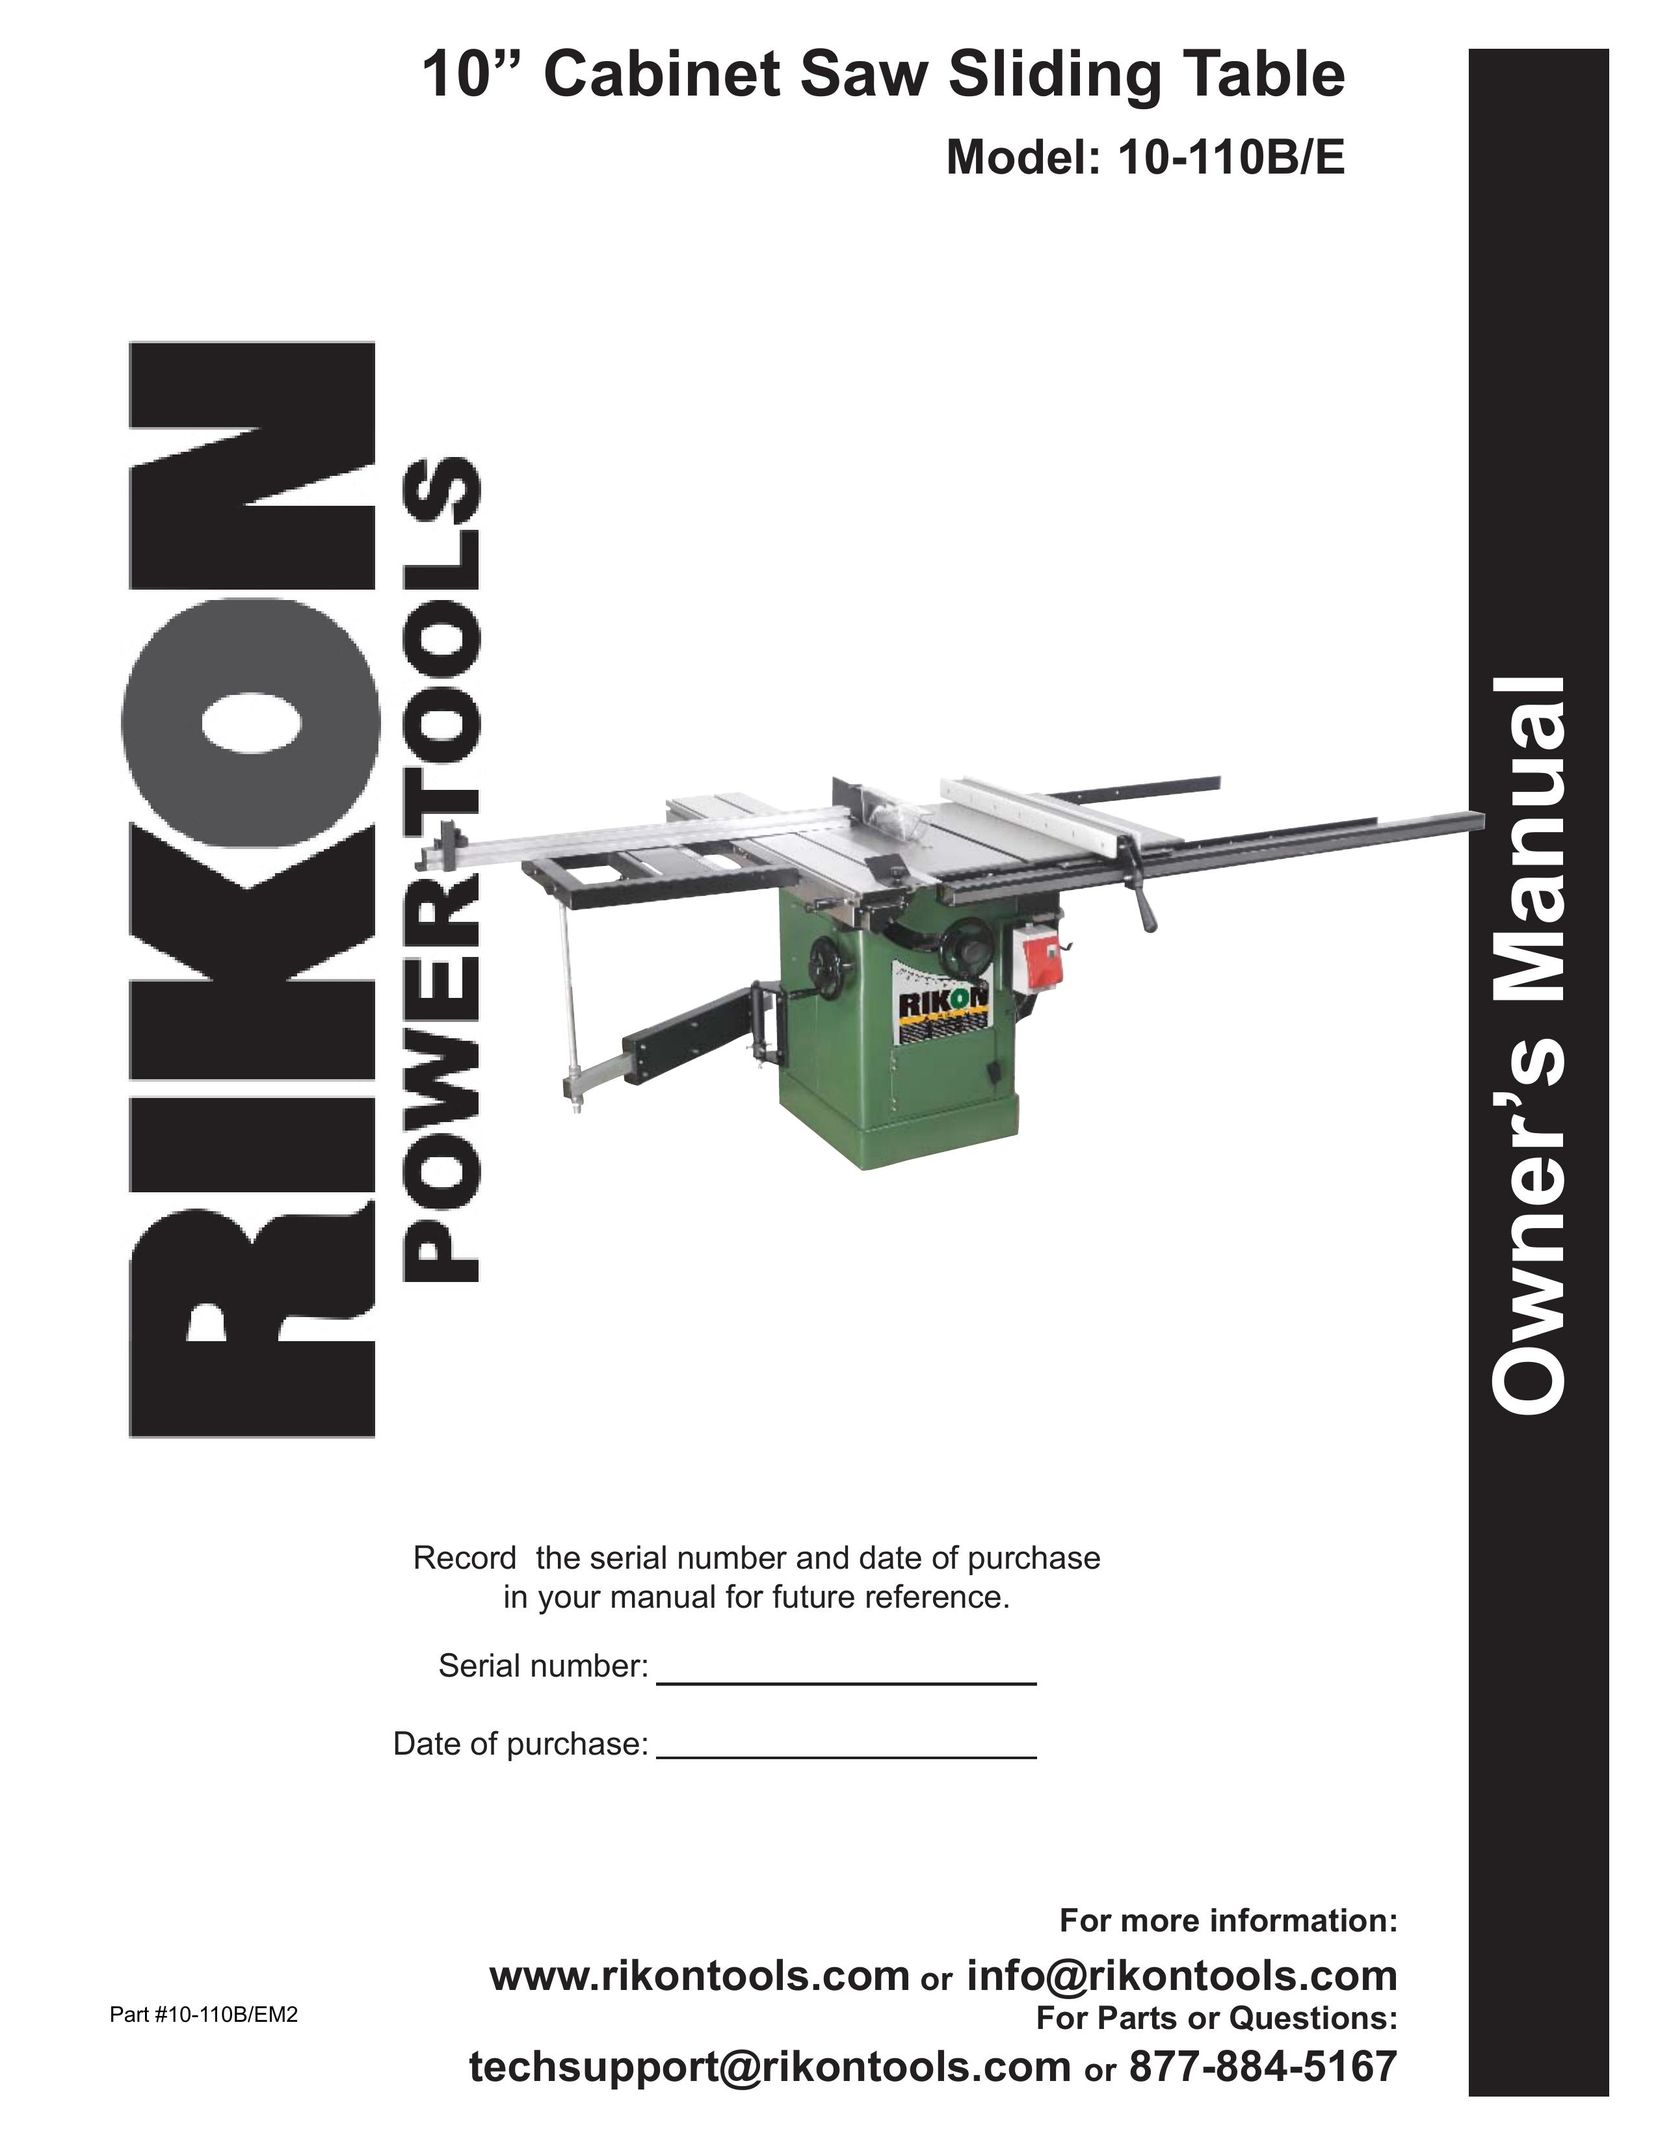 Kuhn Rikon 10-110B/E Saw User Manual